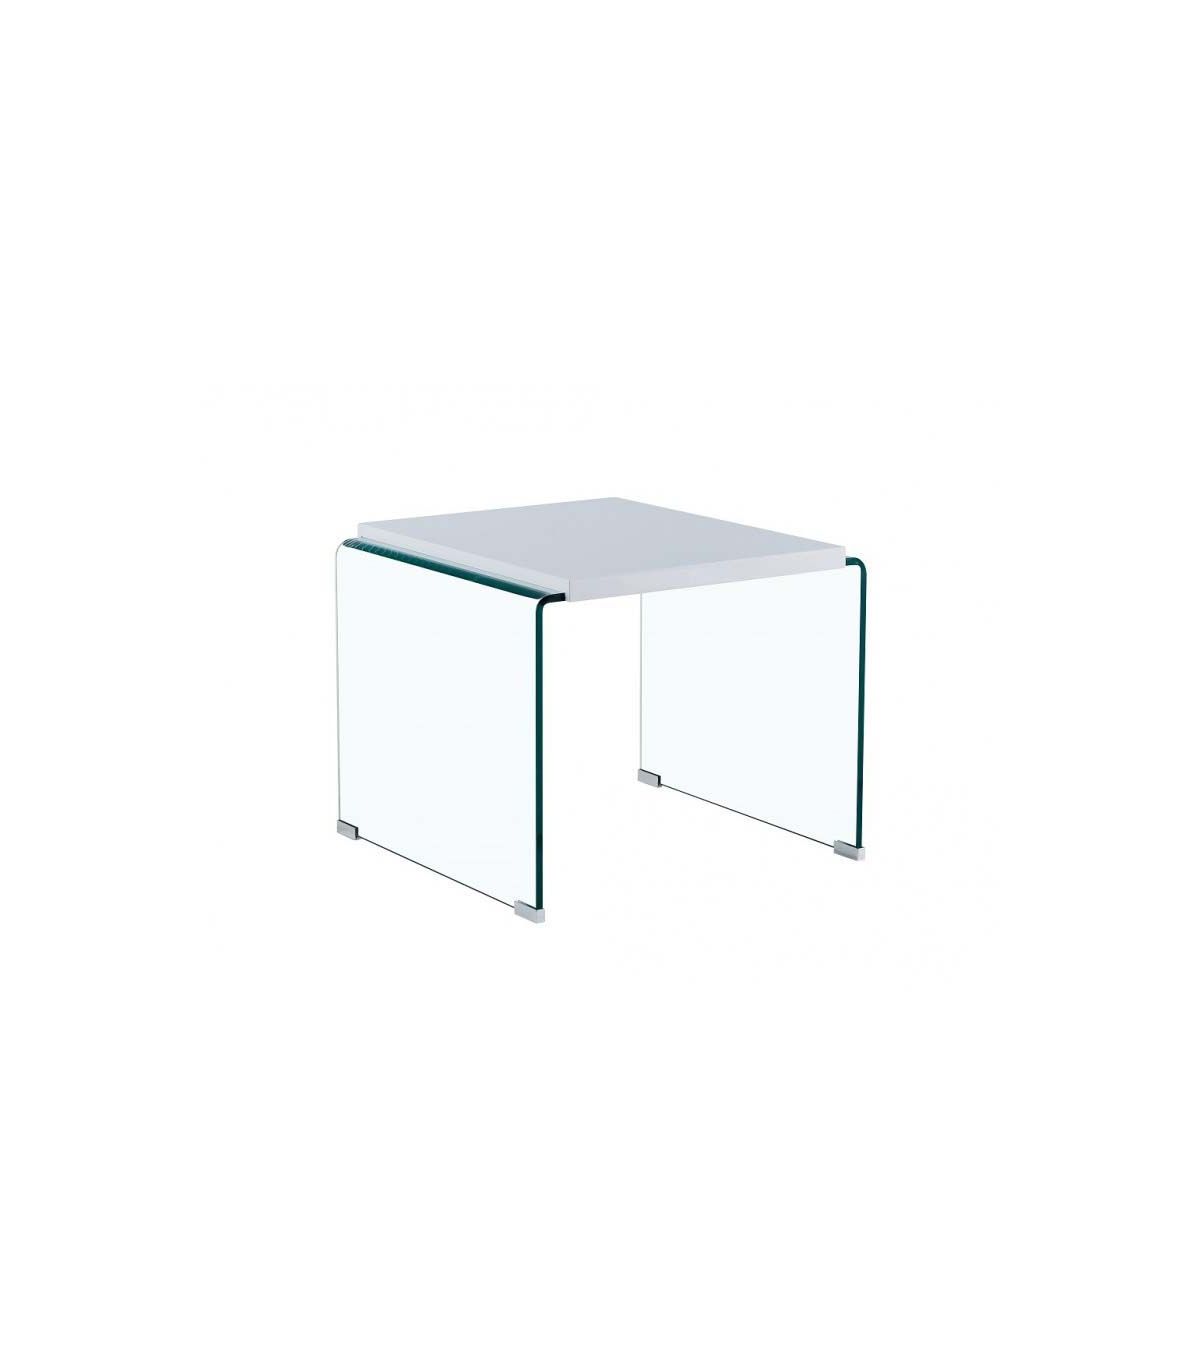 Mesa escritorio realizada en cristal templado de 12mm